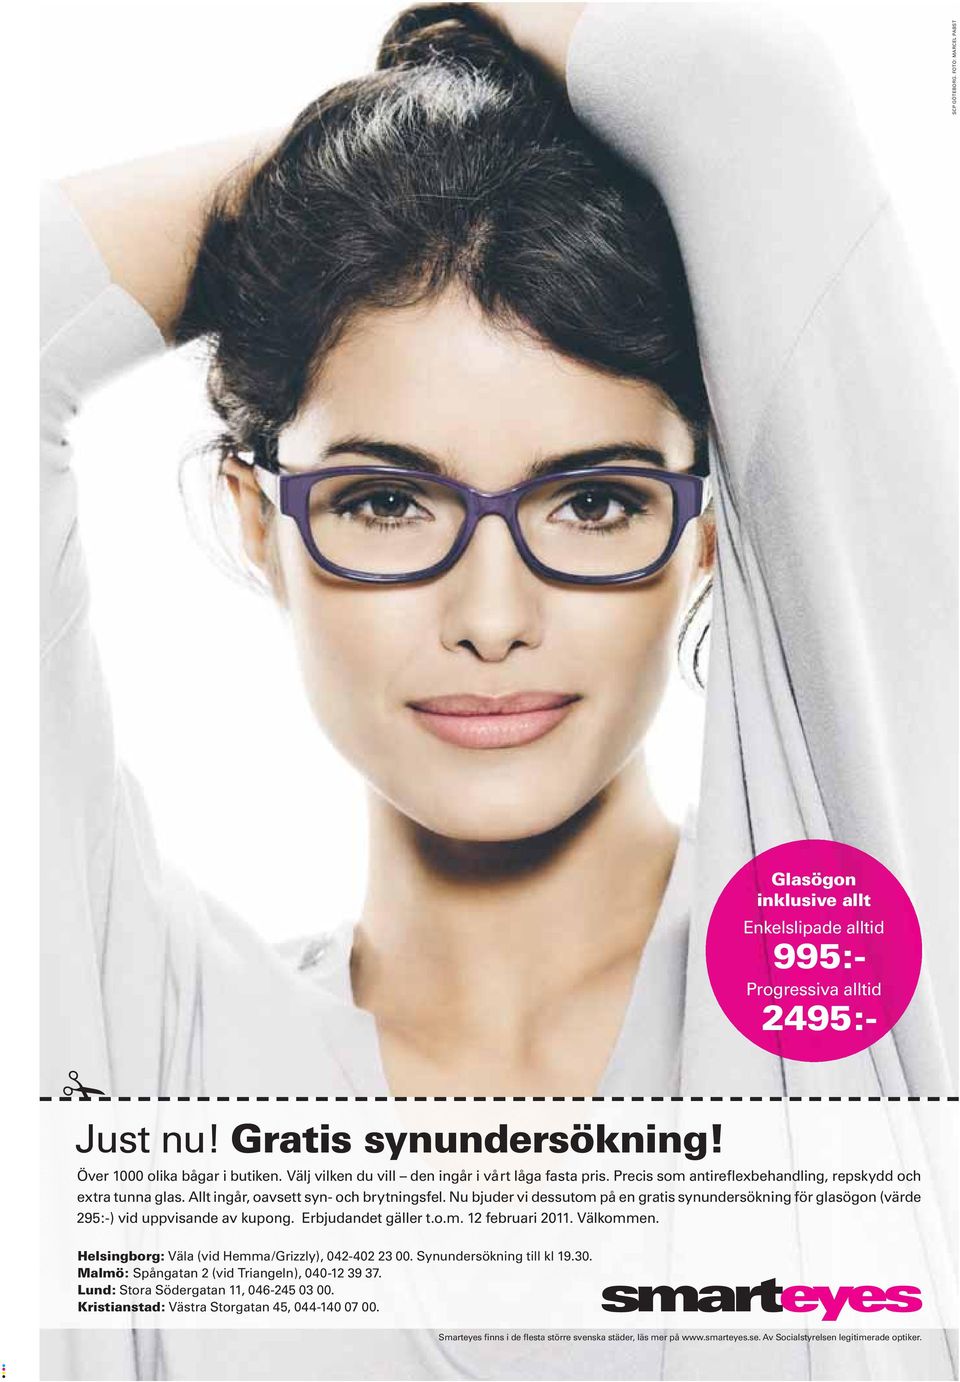 Nu bjuder vi dessutom på en gratis synundersökning för glasögon (värde 295:-) vid uppvisande av kupong. Erbjudandet gäller t.o.m. 12 februari 2011. Välkommen.